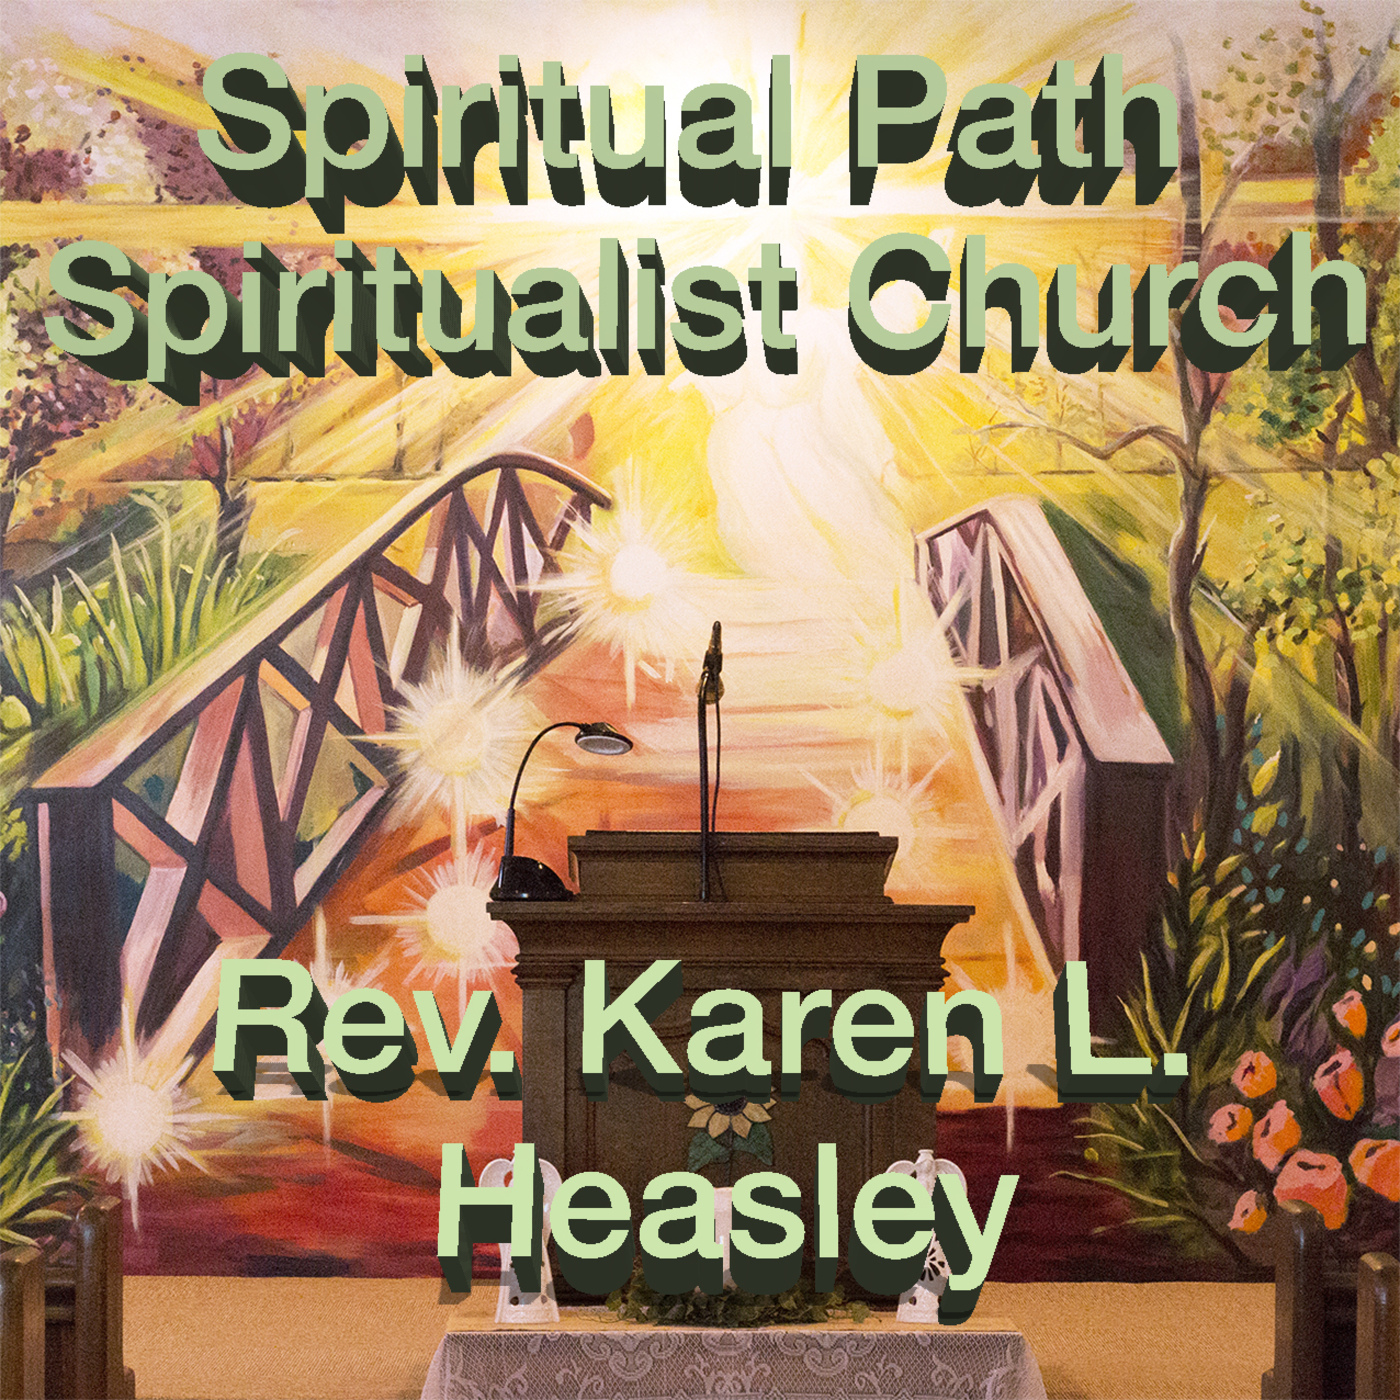 The Spiritual Path Church - Spiritual Podcast Series